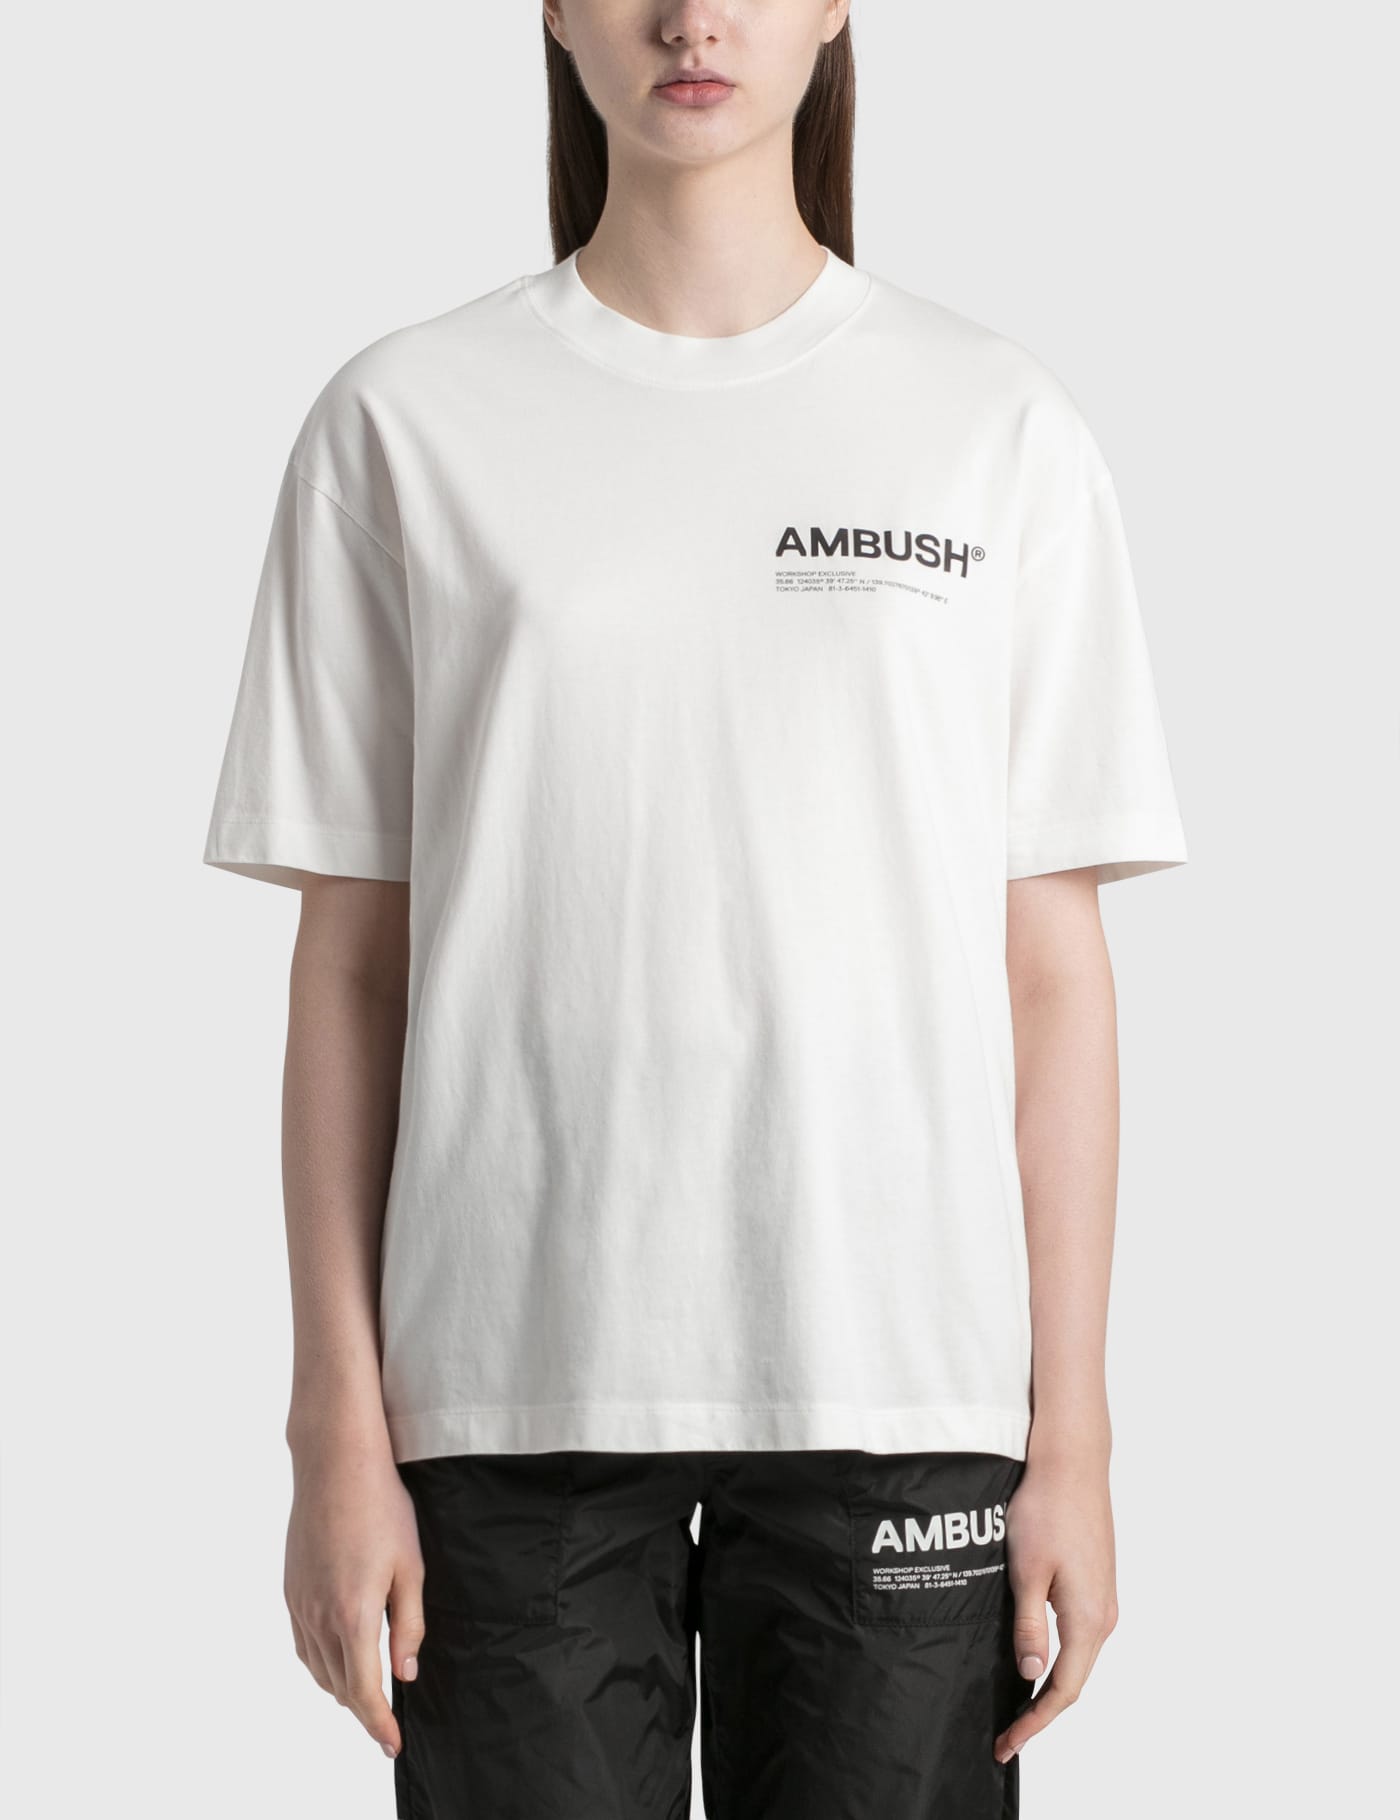 シャツ】 AMBUSH - AMBUSH Tシャツの通販 by uT's shop｜アンブッシュ 